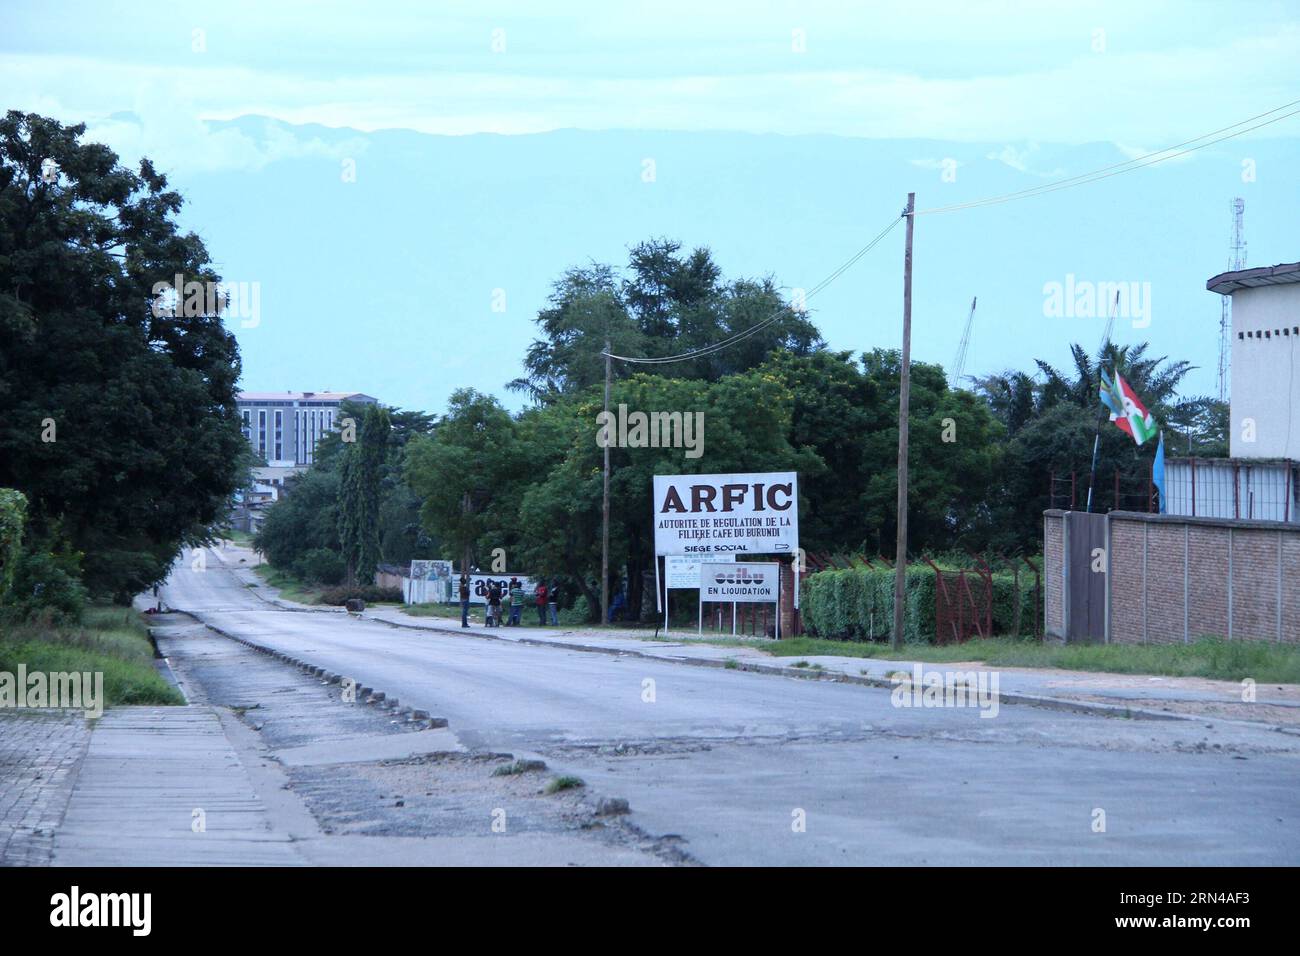 (150514) --BUJUMBURA, 14 maggio 2015 -- foto scattata il 14 maggio 2015 mostrano la strada a seguito di un tentativo di colpo di Stato militare contro il presidente del Burundi a Bujumbura, Burundi, 14 maggio 2015. Giovedì nella capitale del Burundi si sono sentiti spari pesanti e colpi di arma da fuoco, tra le affermazioni dei funzionari filo-presidenti secondo cui un tentativo di colpo di stato era fallito. Yang mengxi) BURUNDI-BUJUMBURA-COLPO DI STATO TENTATIVO SunxRuibo PUBLICATIONxNOTxINxCHN 150514 Bujumbura 14 maggio 2015 foto scattata IL 14 maggio 2015 Mostra la strada a seguito di un tentativo di colpo di stato militare contro il presidente burundese a Bujumbura Burundi 14 maggio 2015 fuoco pesante e ESPLOSIONE sono stati H Foto Stock